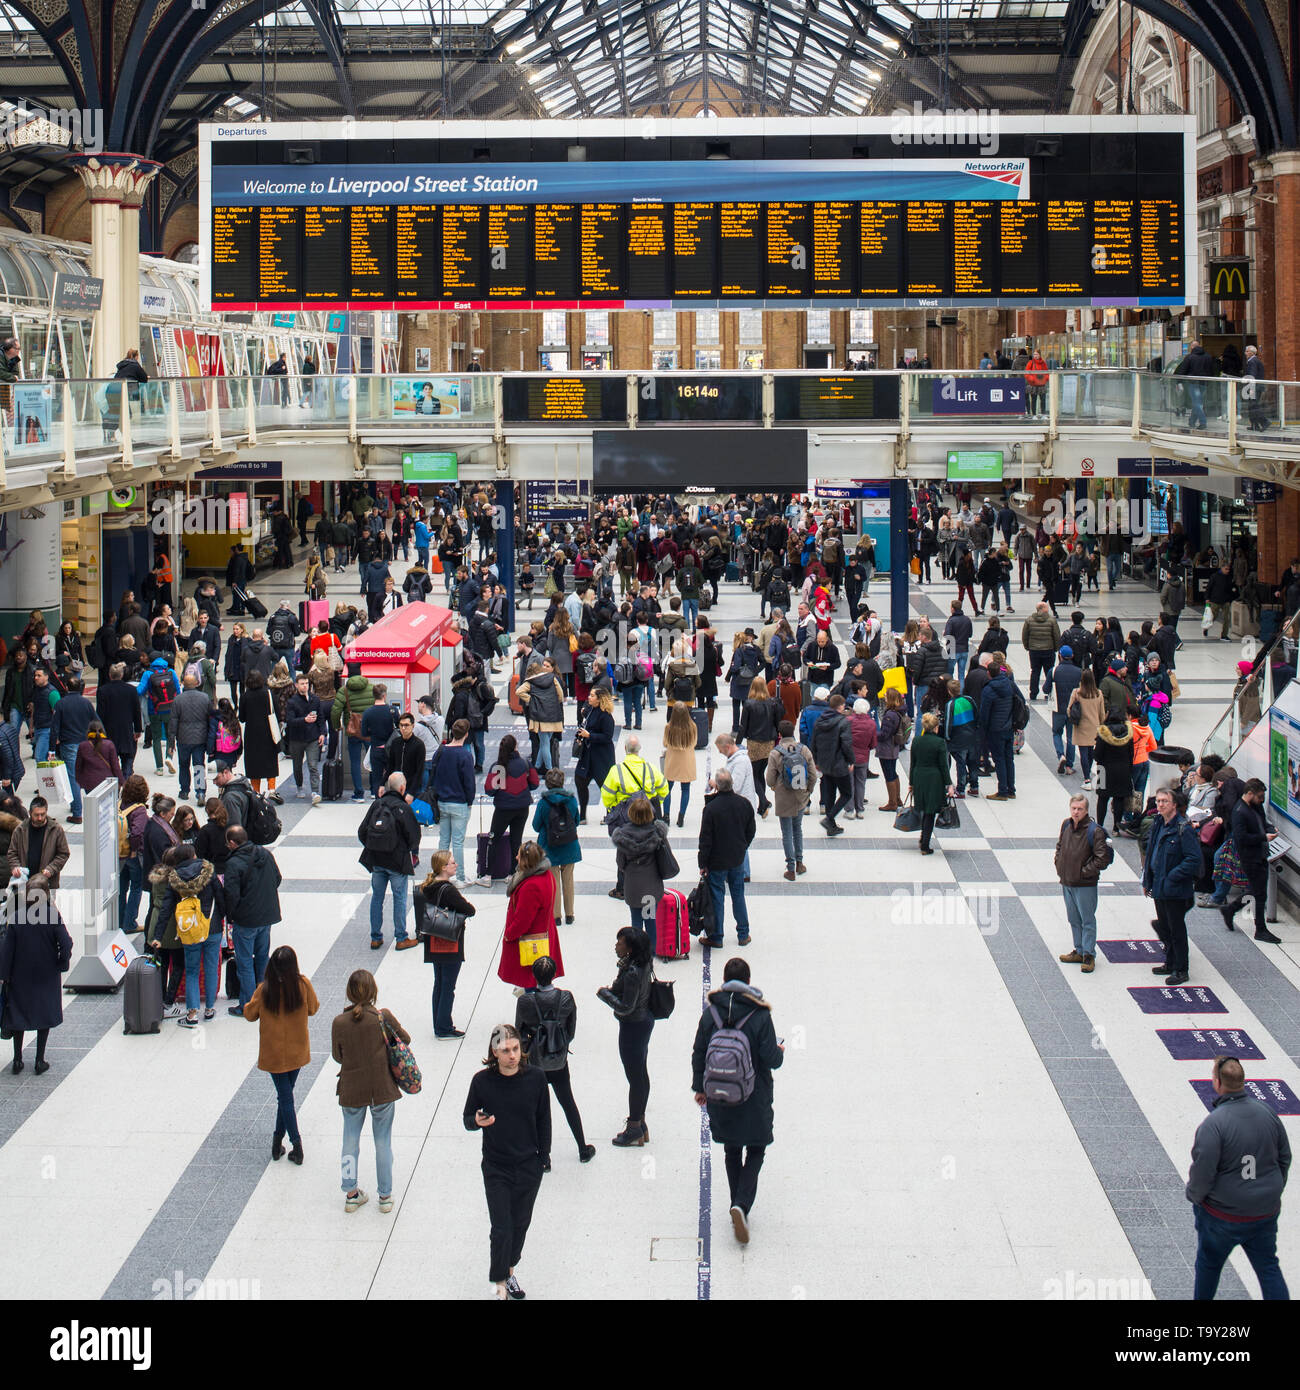 Liverpool Street Station, London, England, UK - April 2019: Leute, Touristen und Pendler in der Halle des beschäftigten London Liverpool Street Station Stockfoto